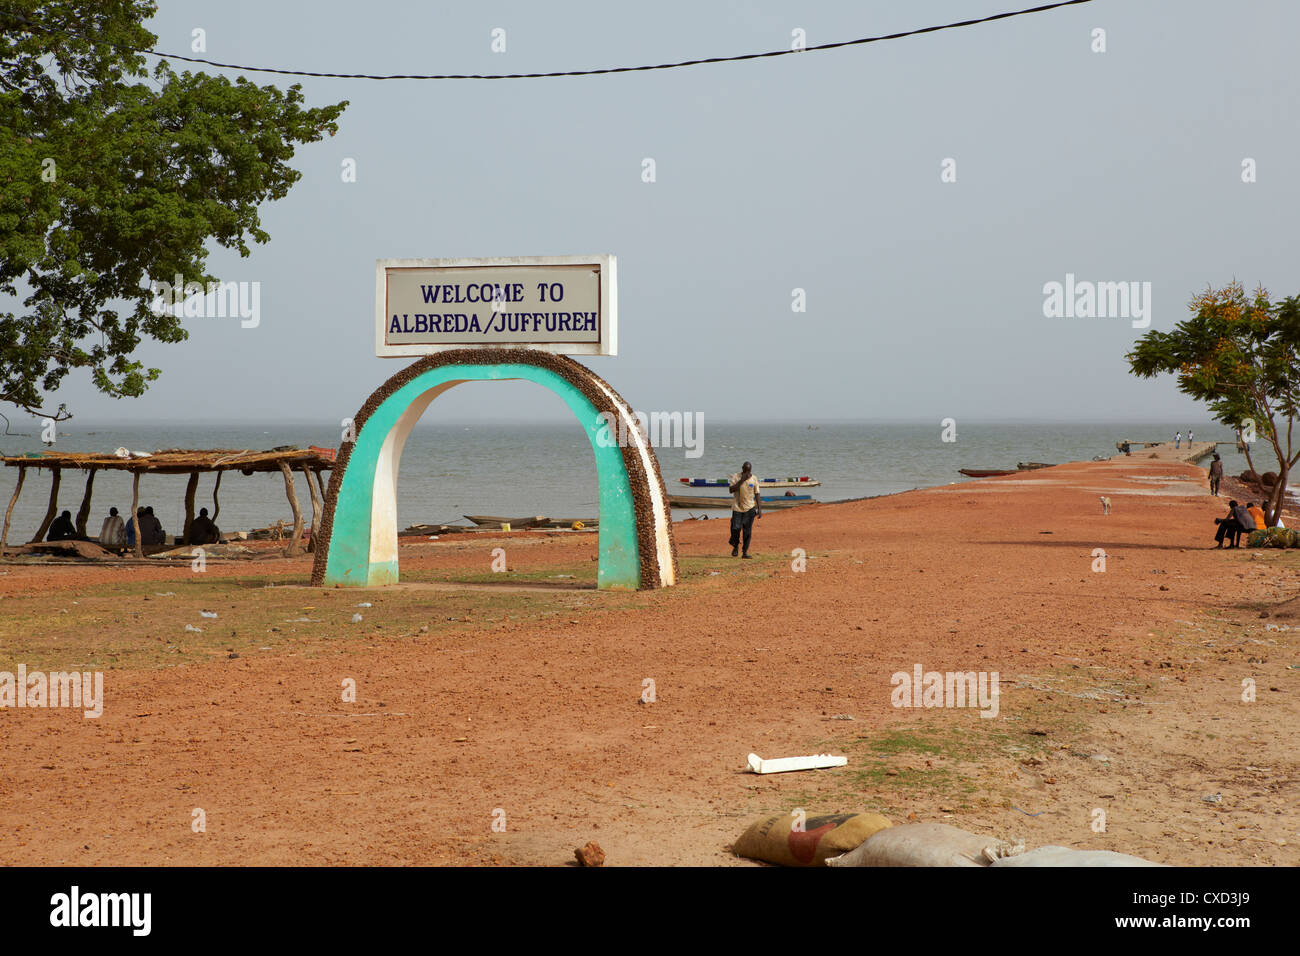 Bienvenue à Juffureh Albreda signe, la Gambie, Afrique de l'Ouest Banque D'Images